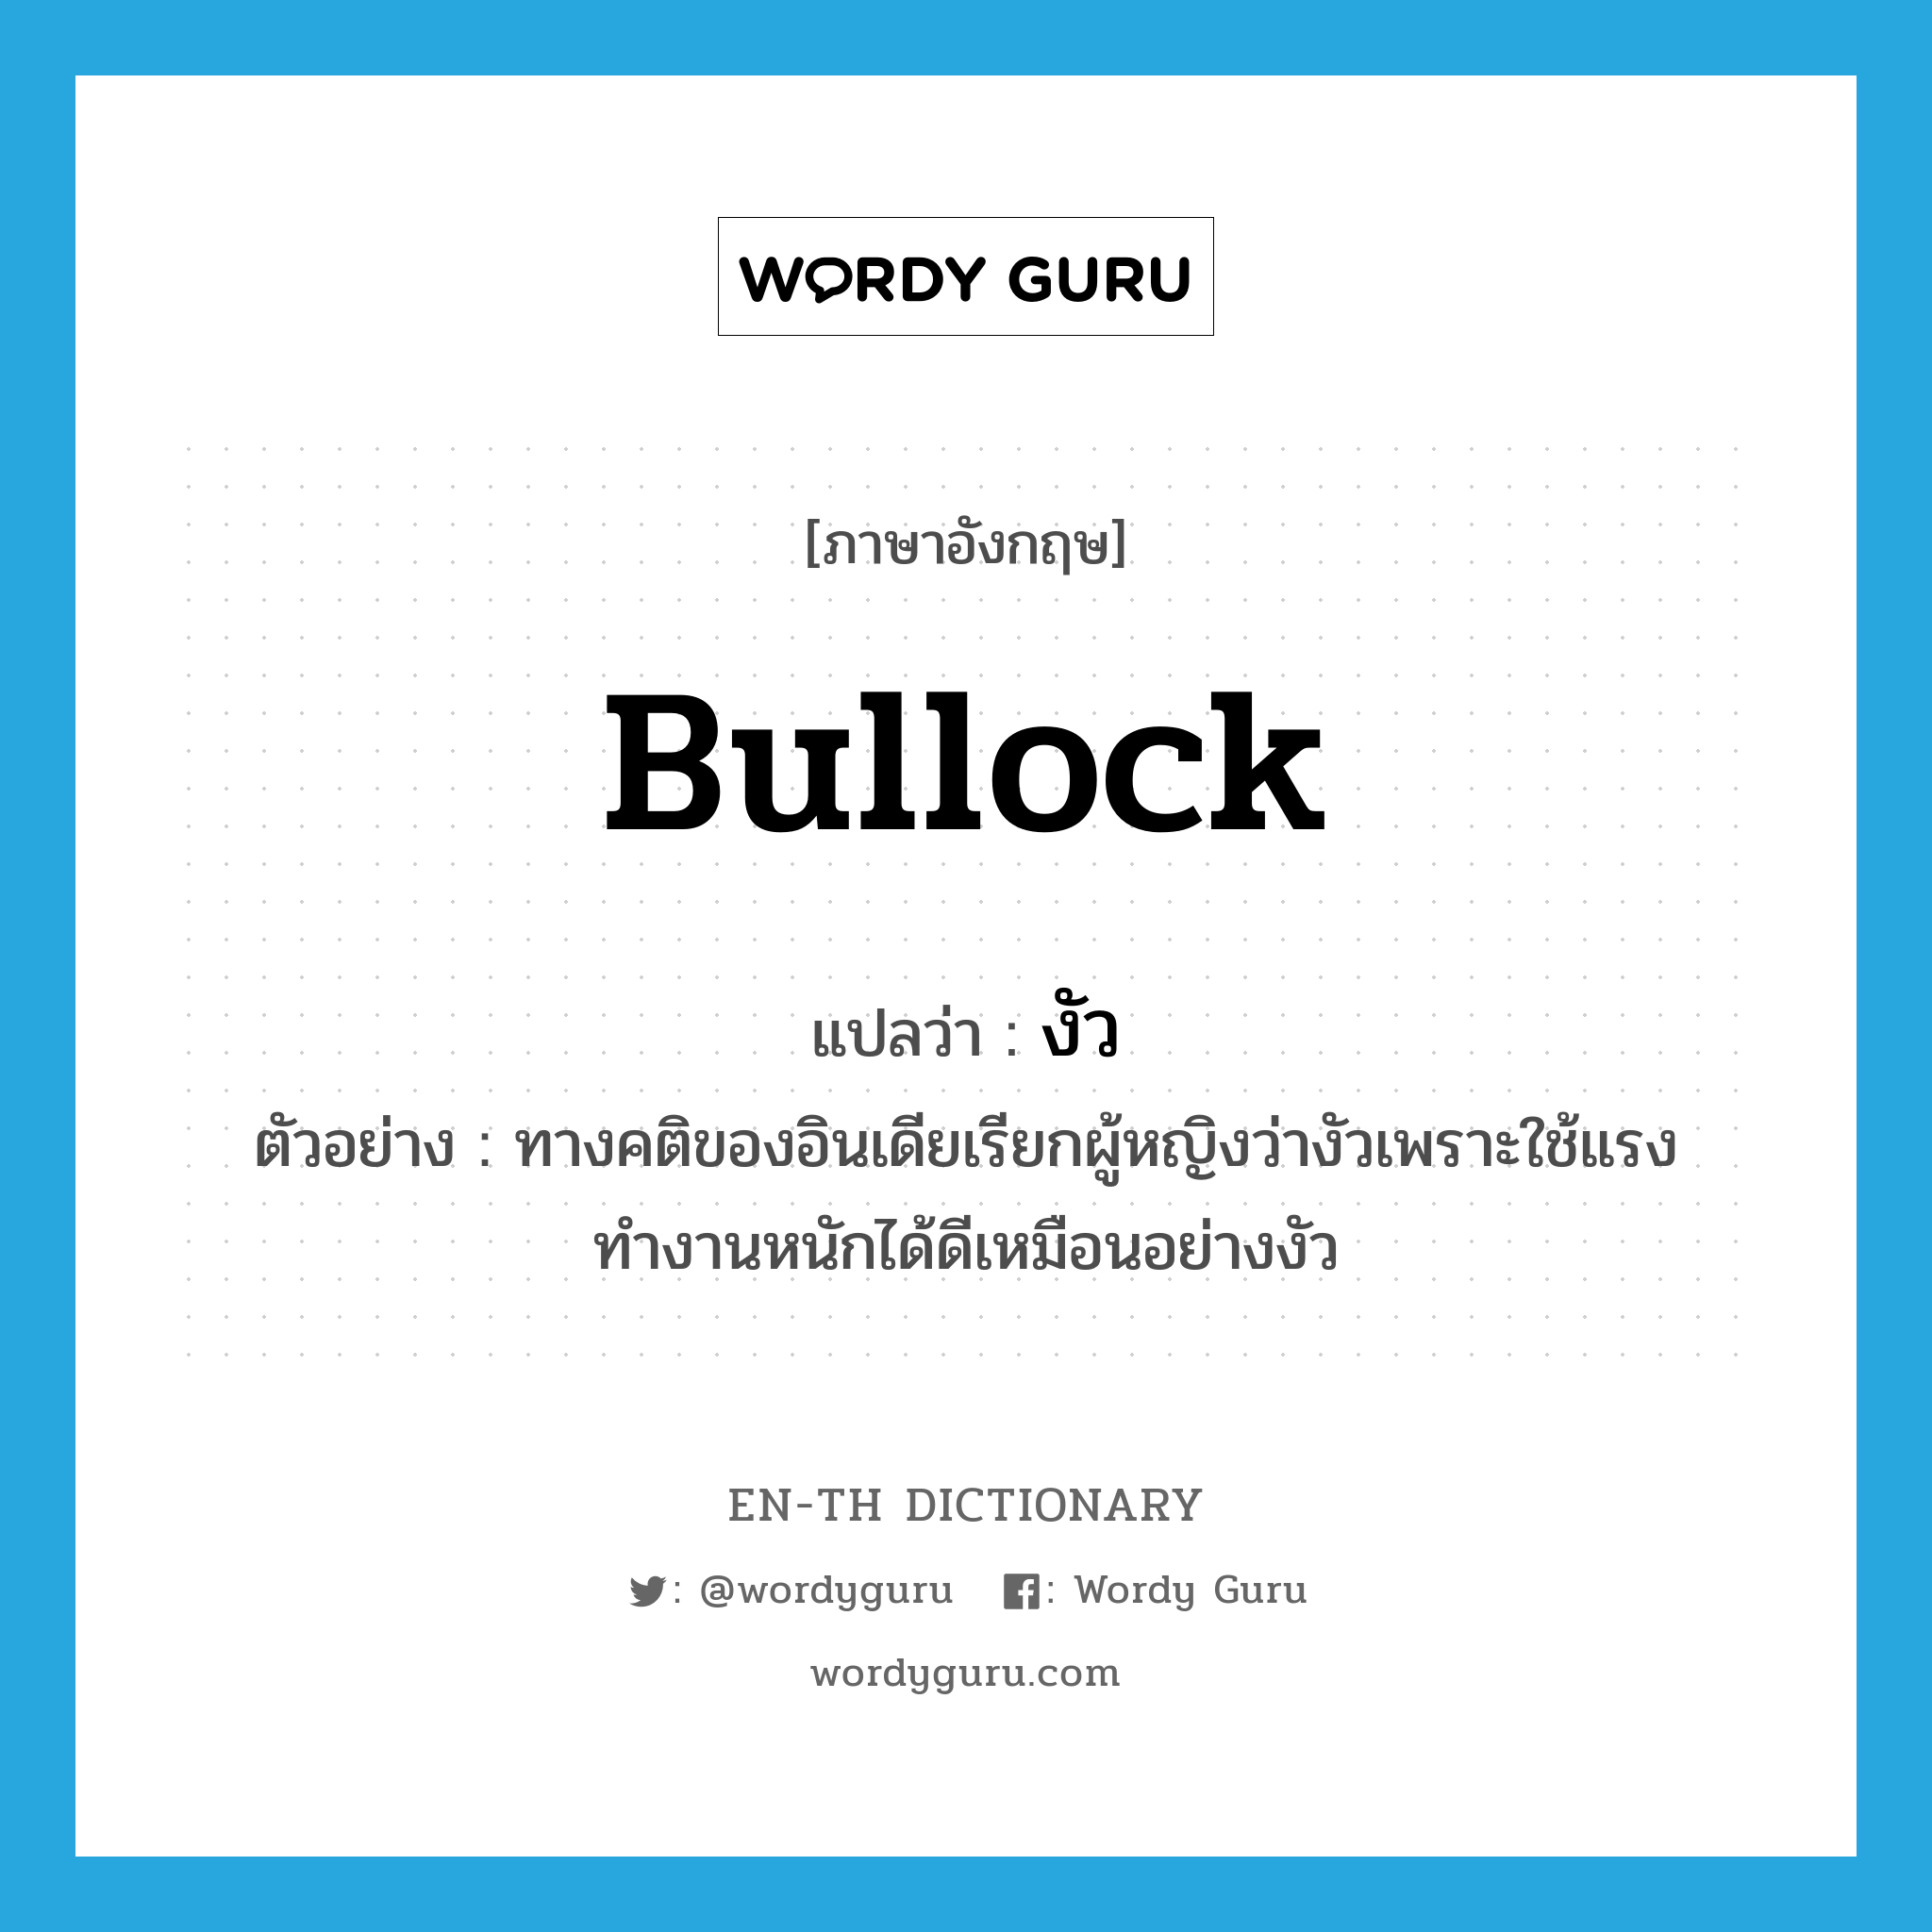 bullock แปลว่า?, คำศัพท์ภาษาอังกฤษ bullock แปลว่า งัว ประเภท N ตัวอย่าง ทางคติของอินเดียเรียกผู้หญิงว่างัวเพราะใช้แรงทำงานหนักได้ดีเหมือนอย่างงัว หมวด N